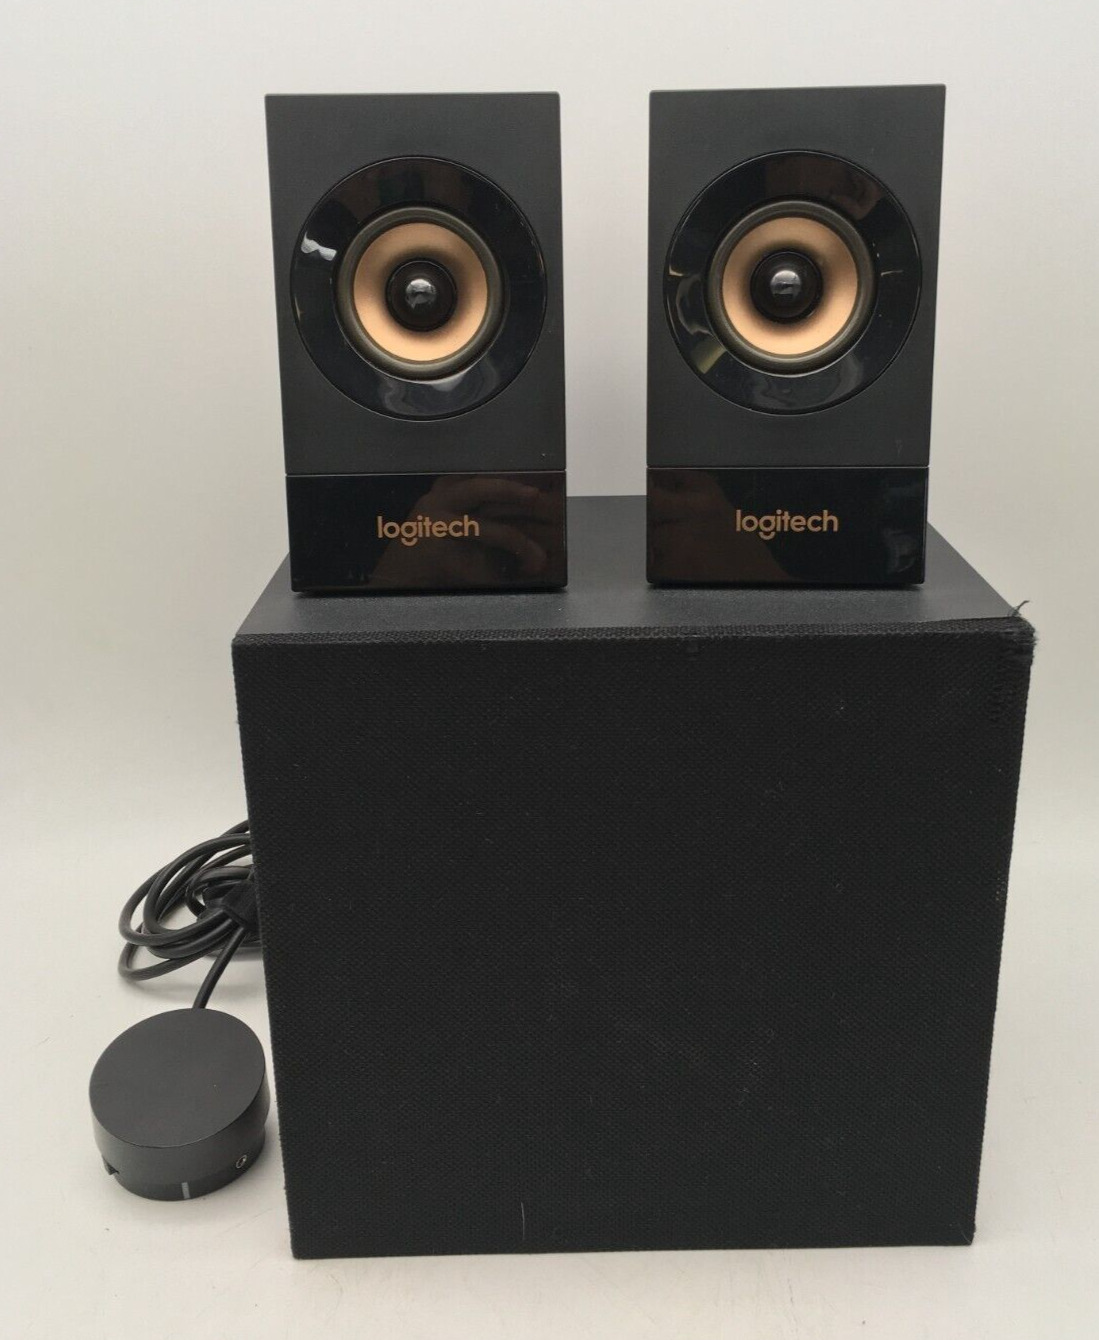 Logitech S-00150 PC Speaker Boxes Subwoofer Stereo Speaker